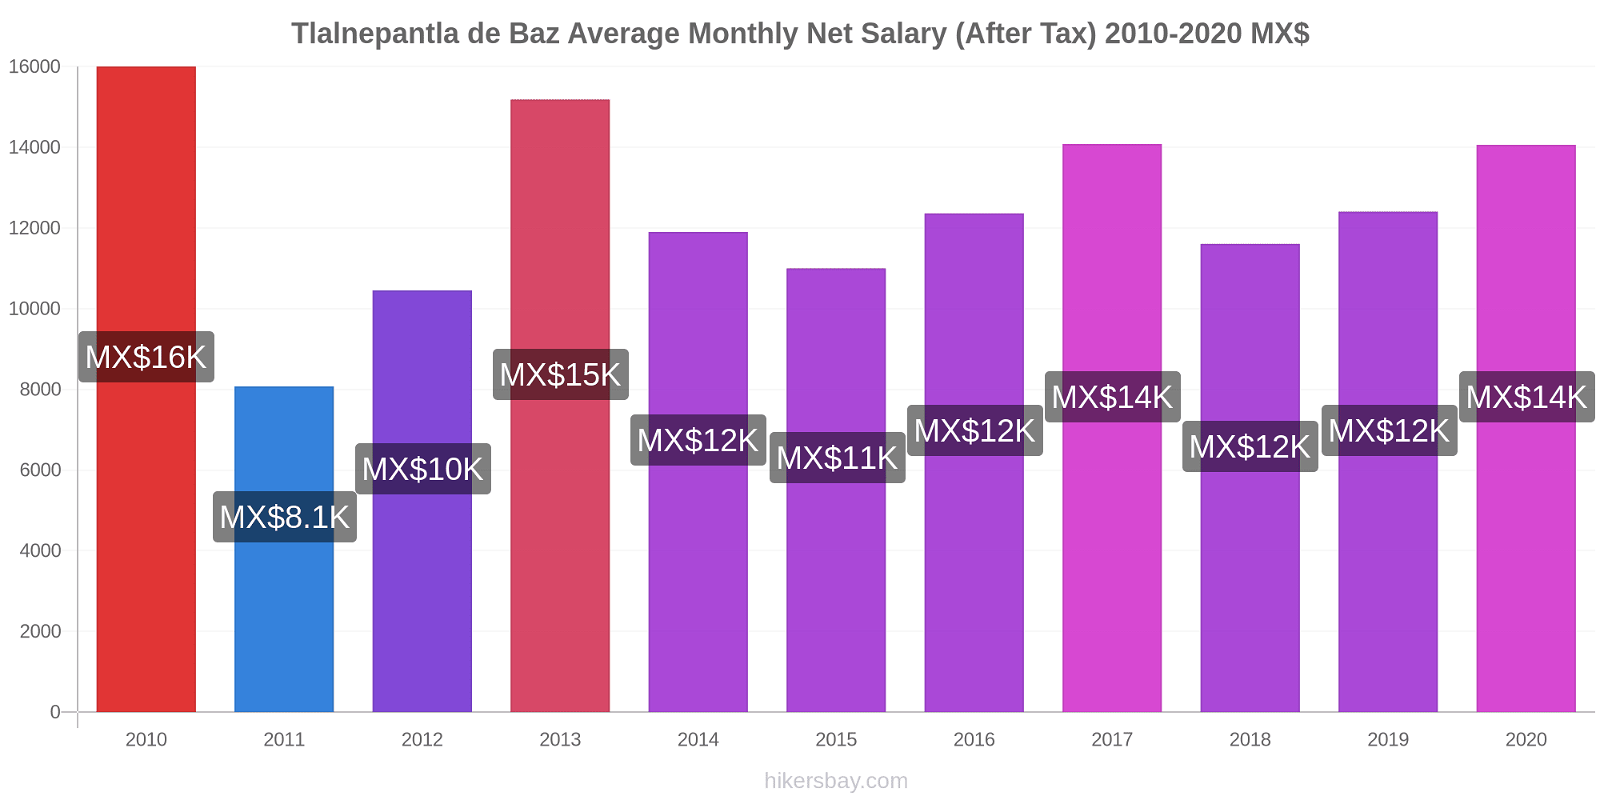 Tlalnepantla de Baz price changes Average Monthly Net Salary (After Tax) hikersbay.com